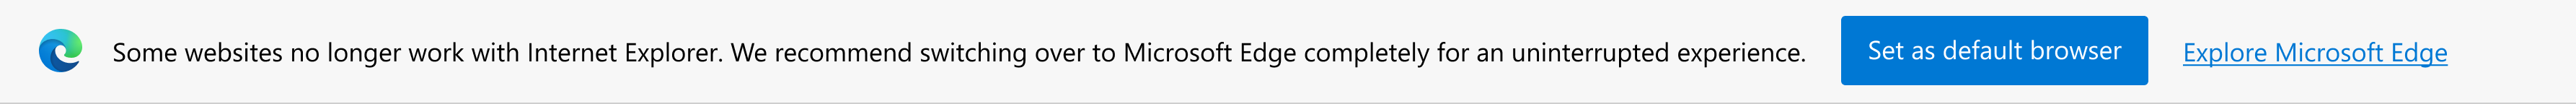 Notification sur les sites modernes et invite de configuration de Microsoft Edge en tant que navigateur par défaut ou exploration de Microsoft Edge.